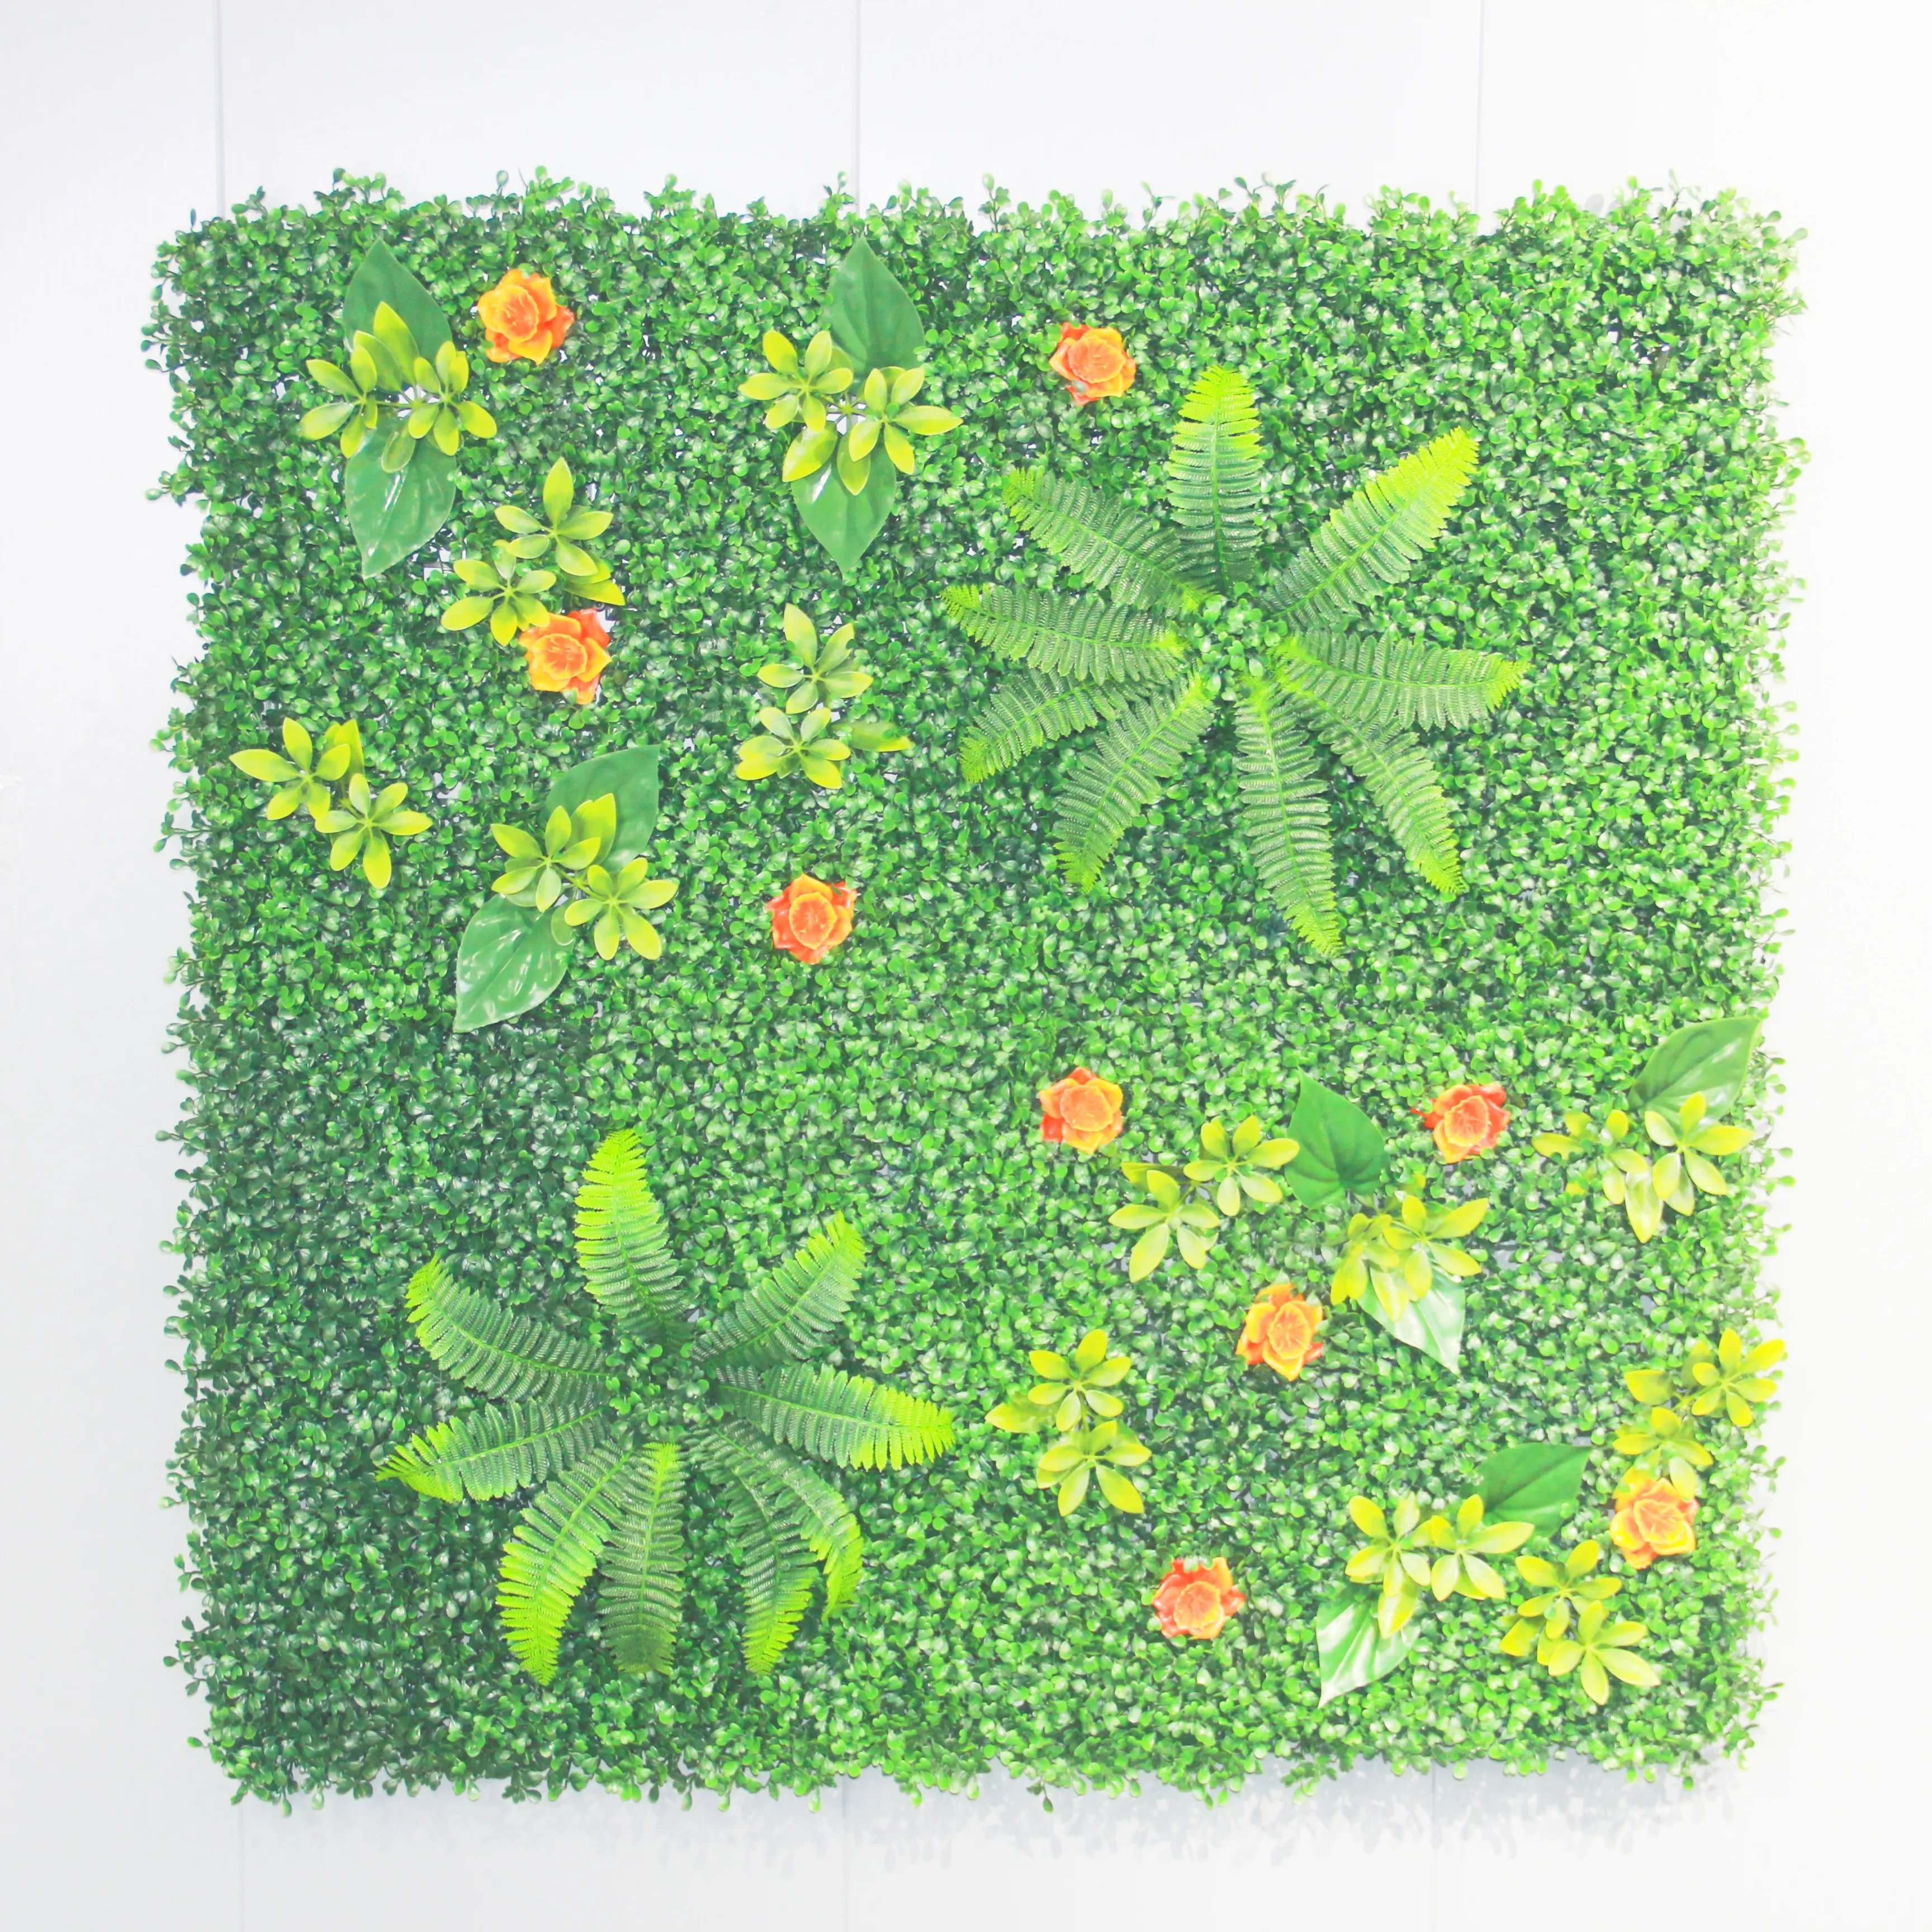 Plantes vertes artificielles suspendues au mur Faux gazon certifié UV pour la protection solaire extérieure Décoration murale certifiée UV